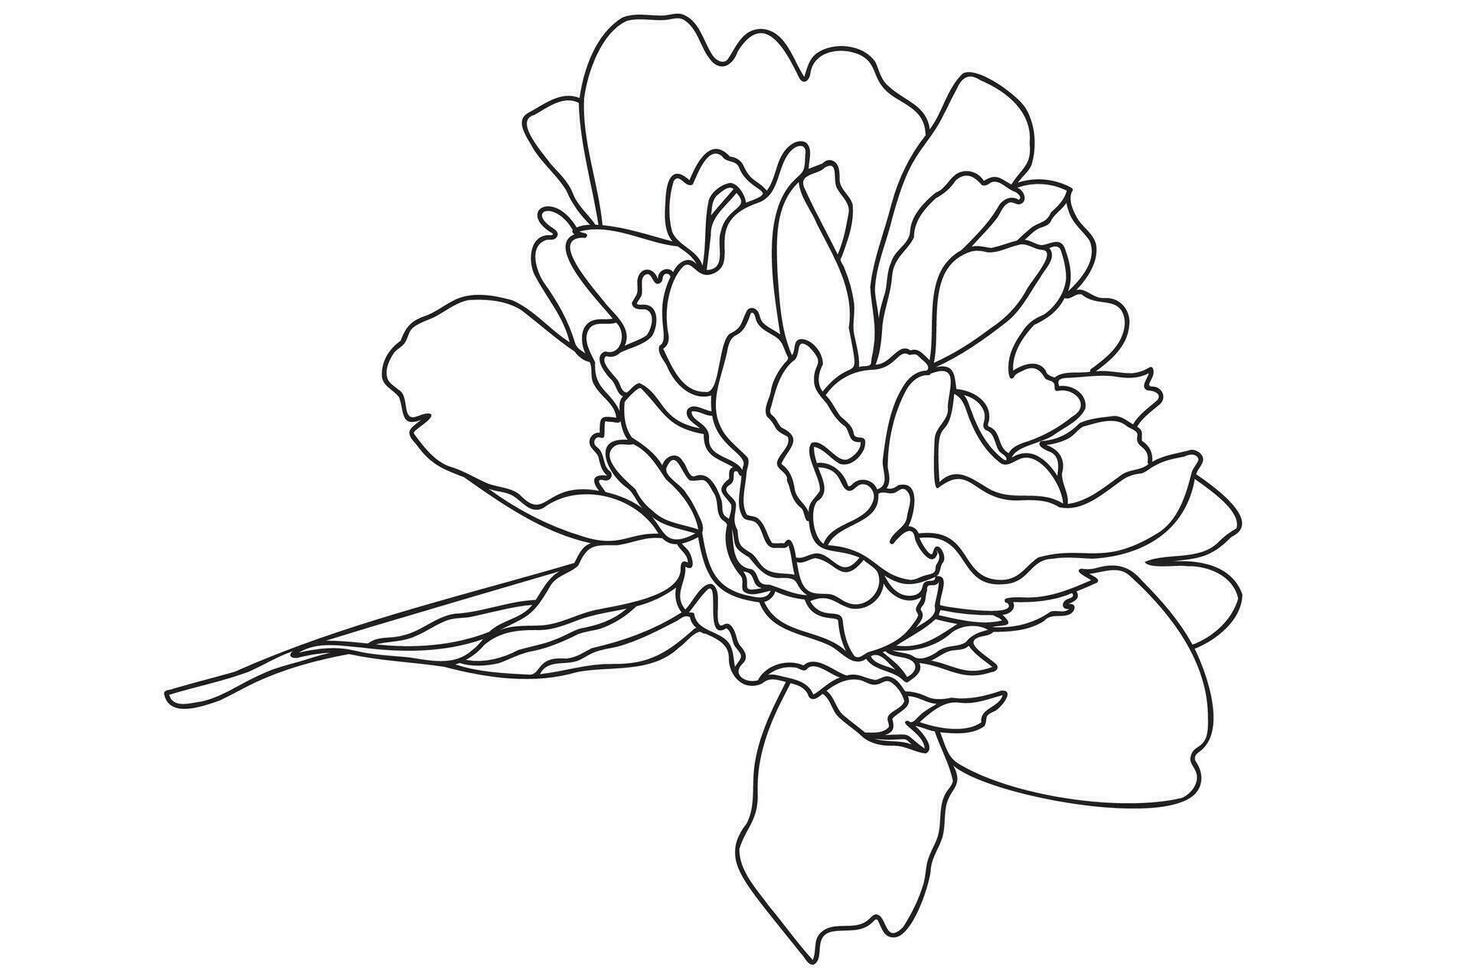 le chrysanthème dessiné en noir sur fond blanc peut être utilisé pour les cartes, le 8 mars, la Saint-Valentin, le tatouage, l'impression de vêtements, la coloration vecteur